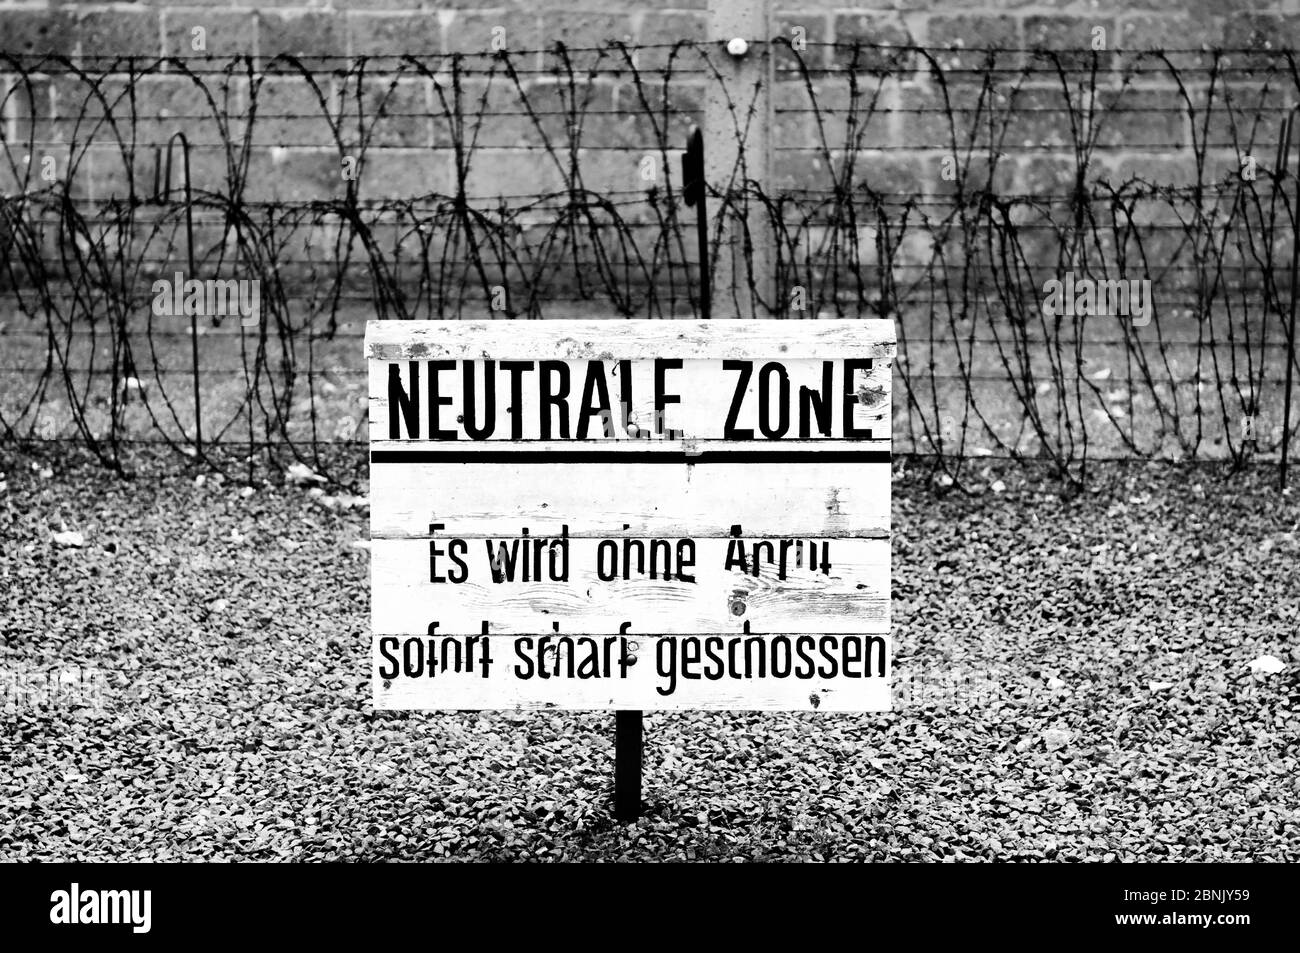 Schild im ns-Konzentrationslager Sachsenhausen. Das Schild sagt "NEUTRALE ZONE", was bedeutet, dass Sie ohne Warnung beim Betreten dieser Zone erschossen werden. Stockfoto